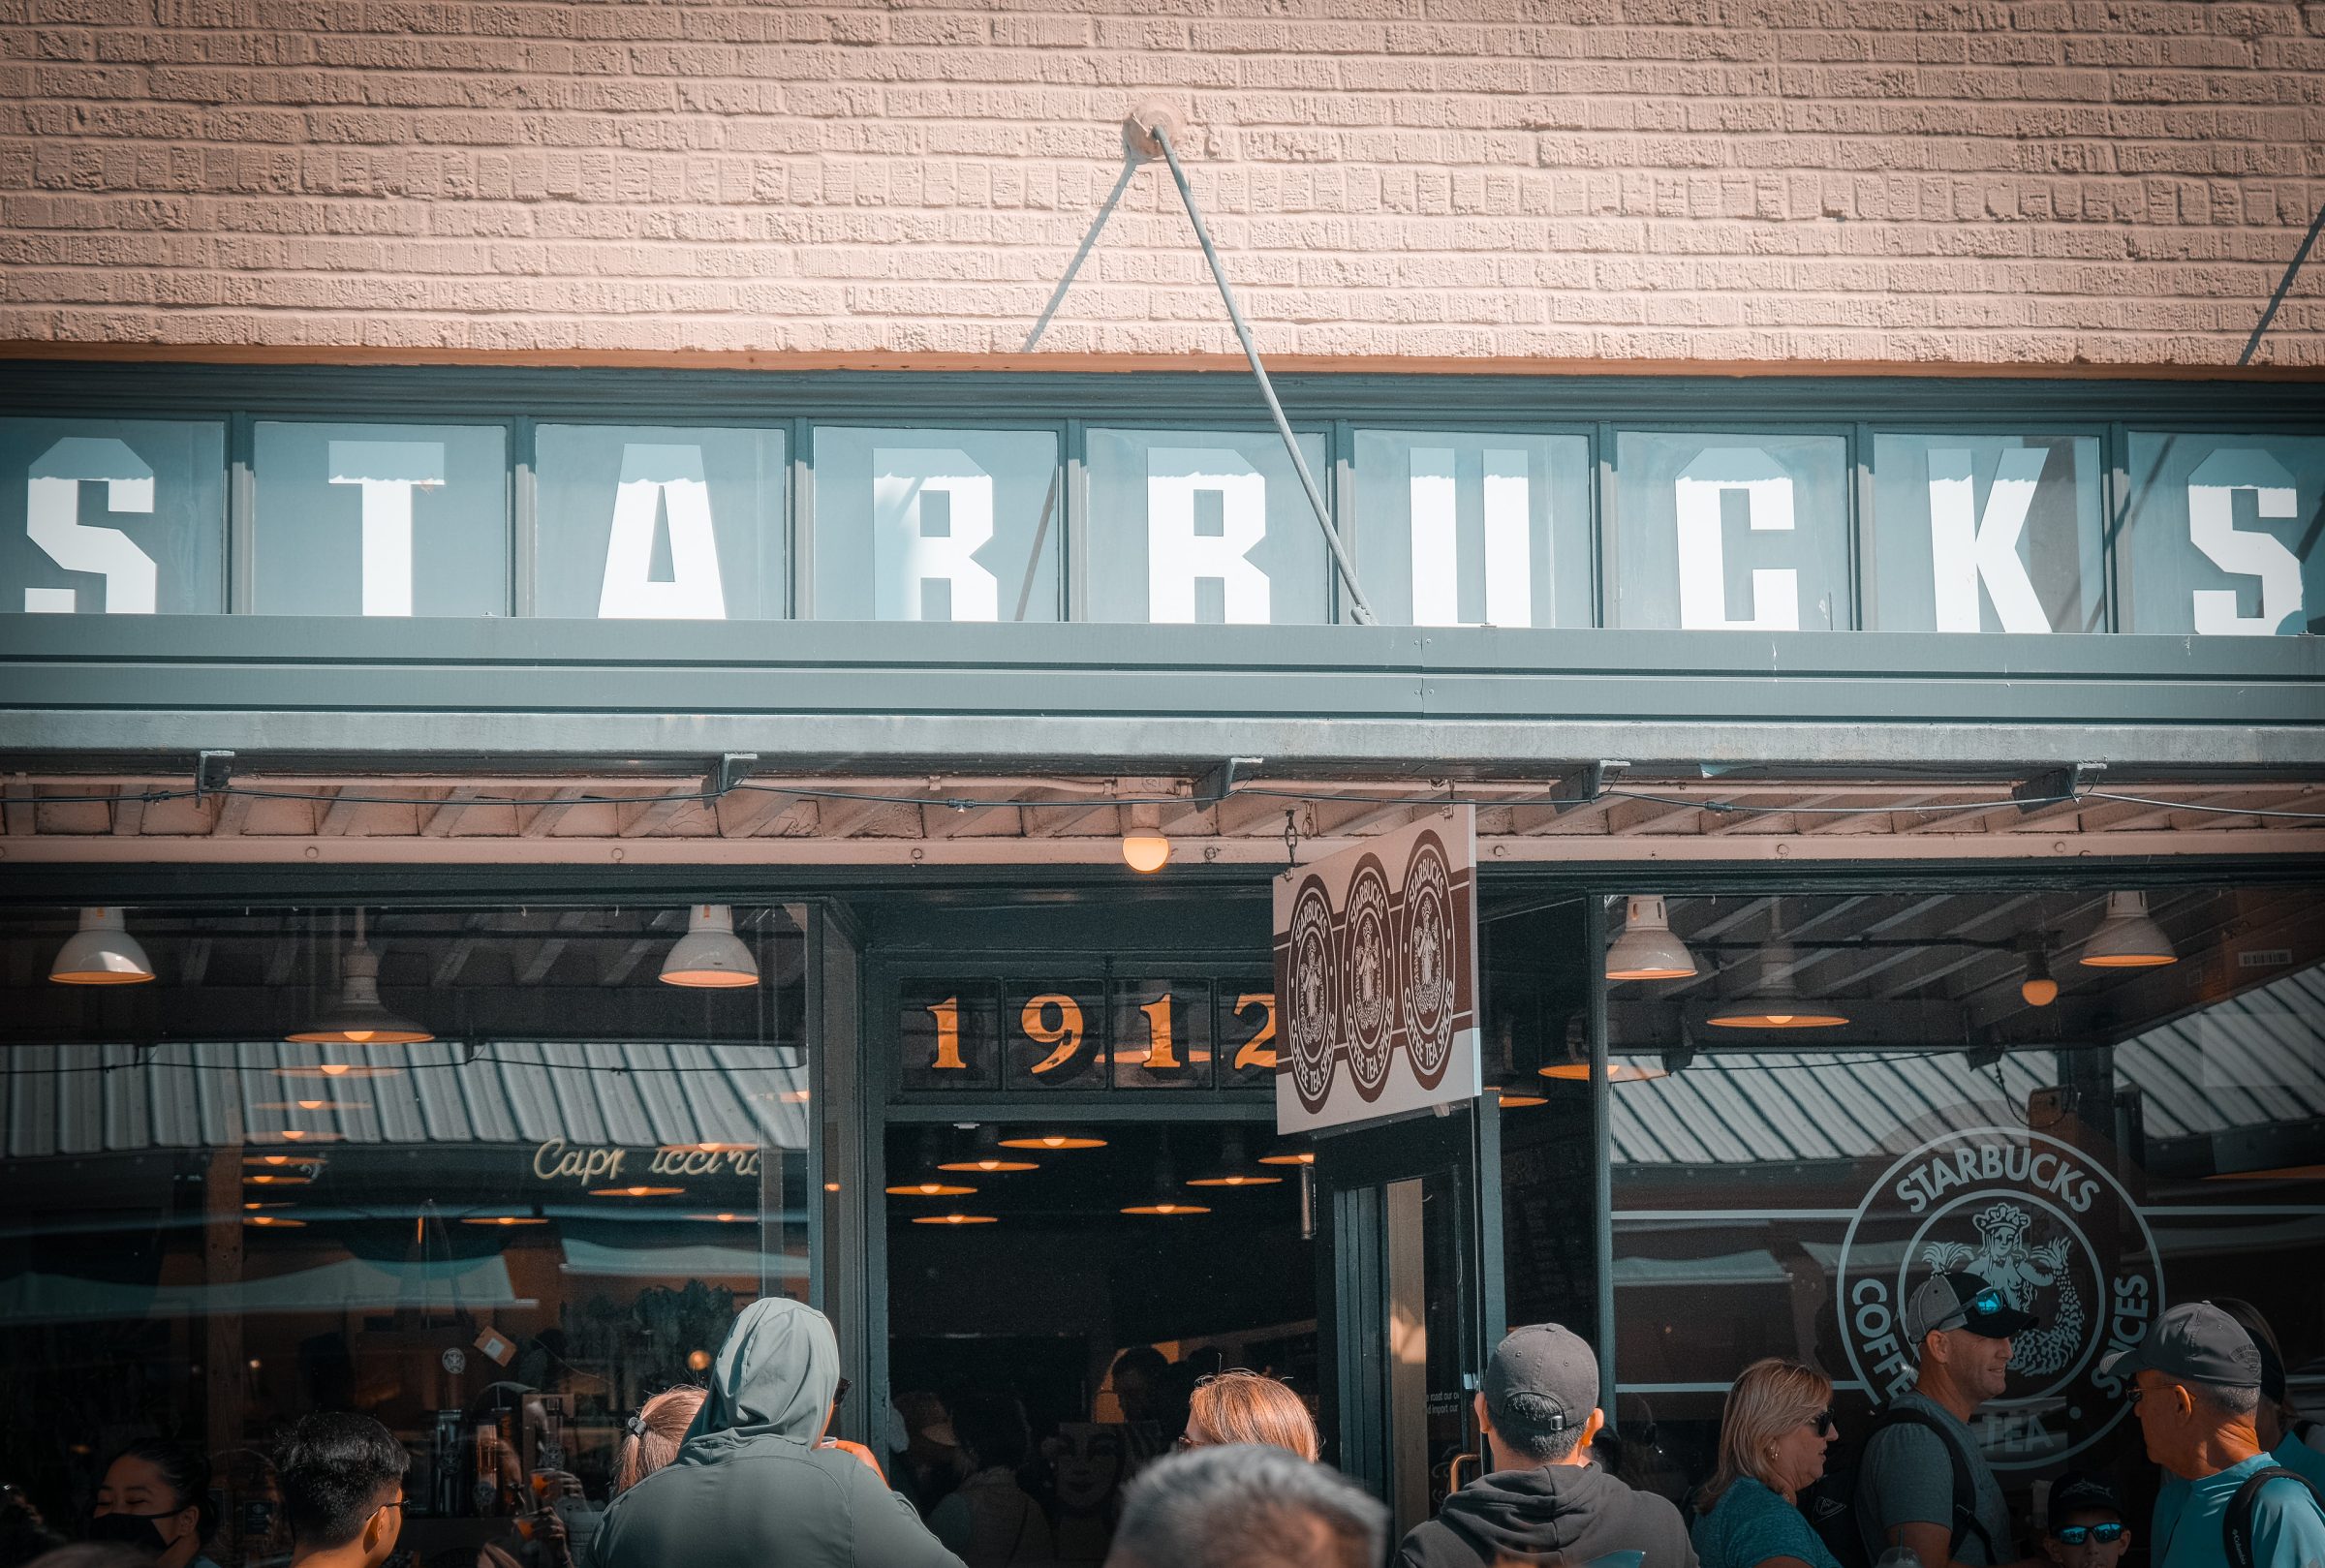 De gevel van de eerste Starbucks | Tips voor Seattle